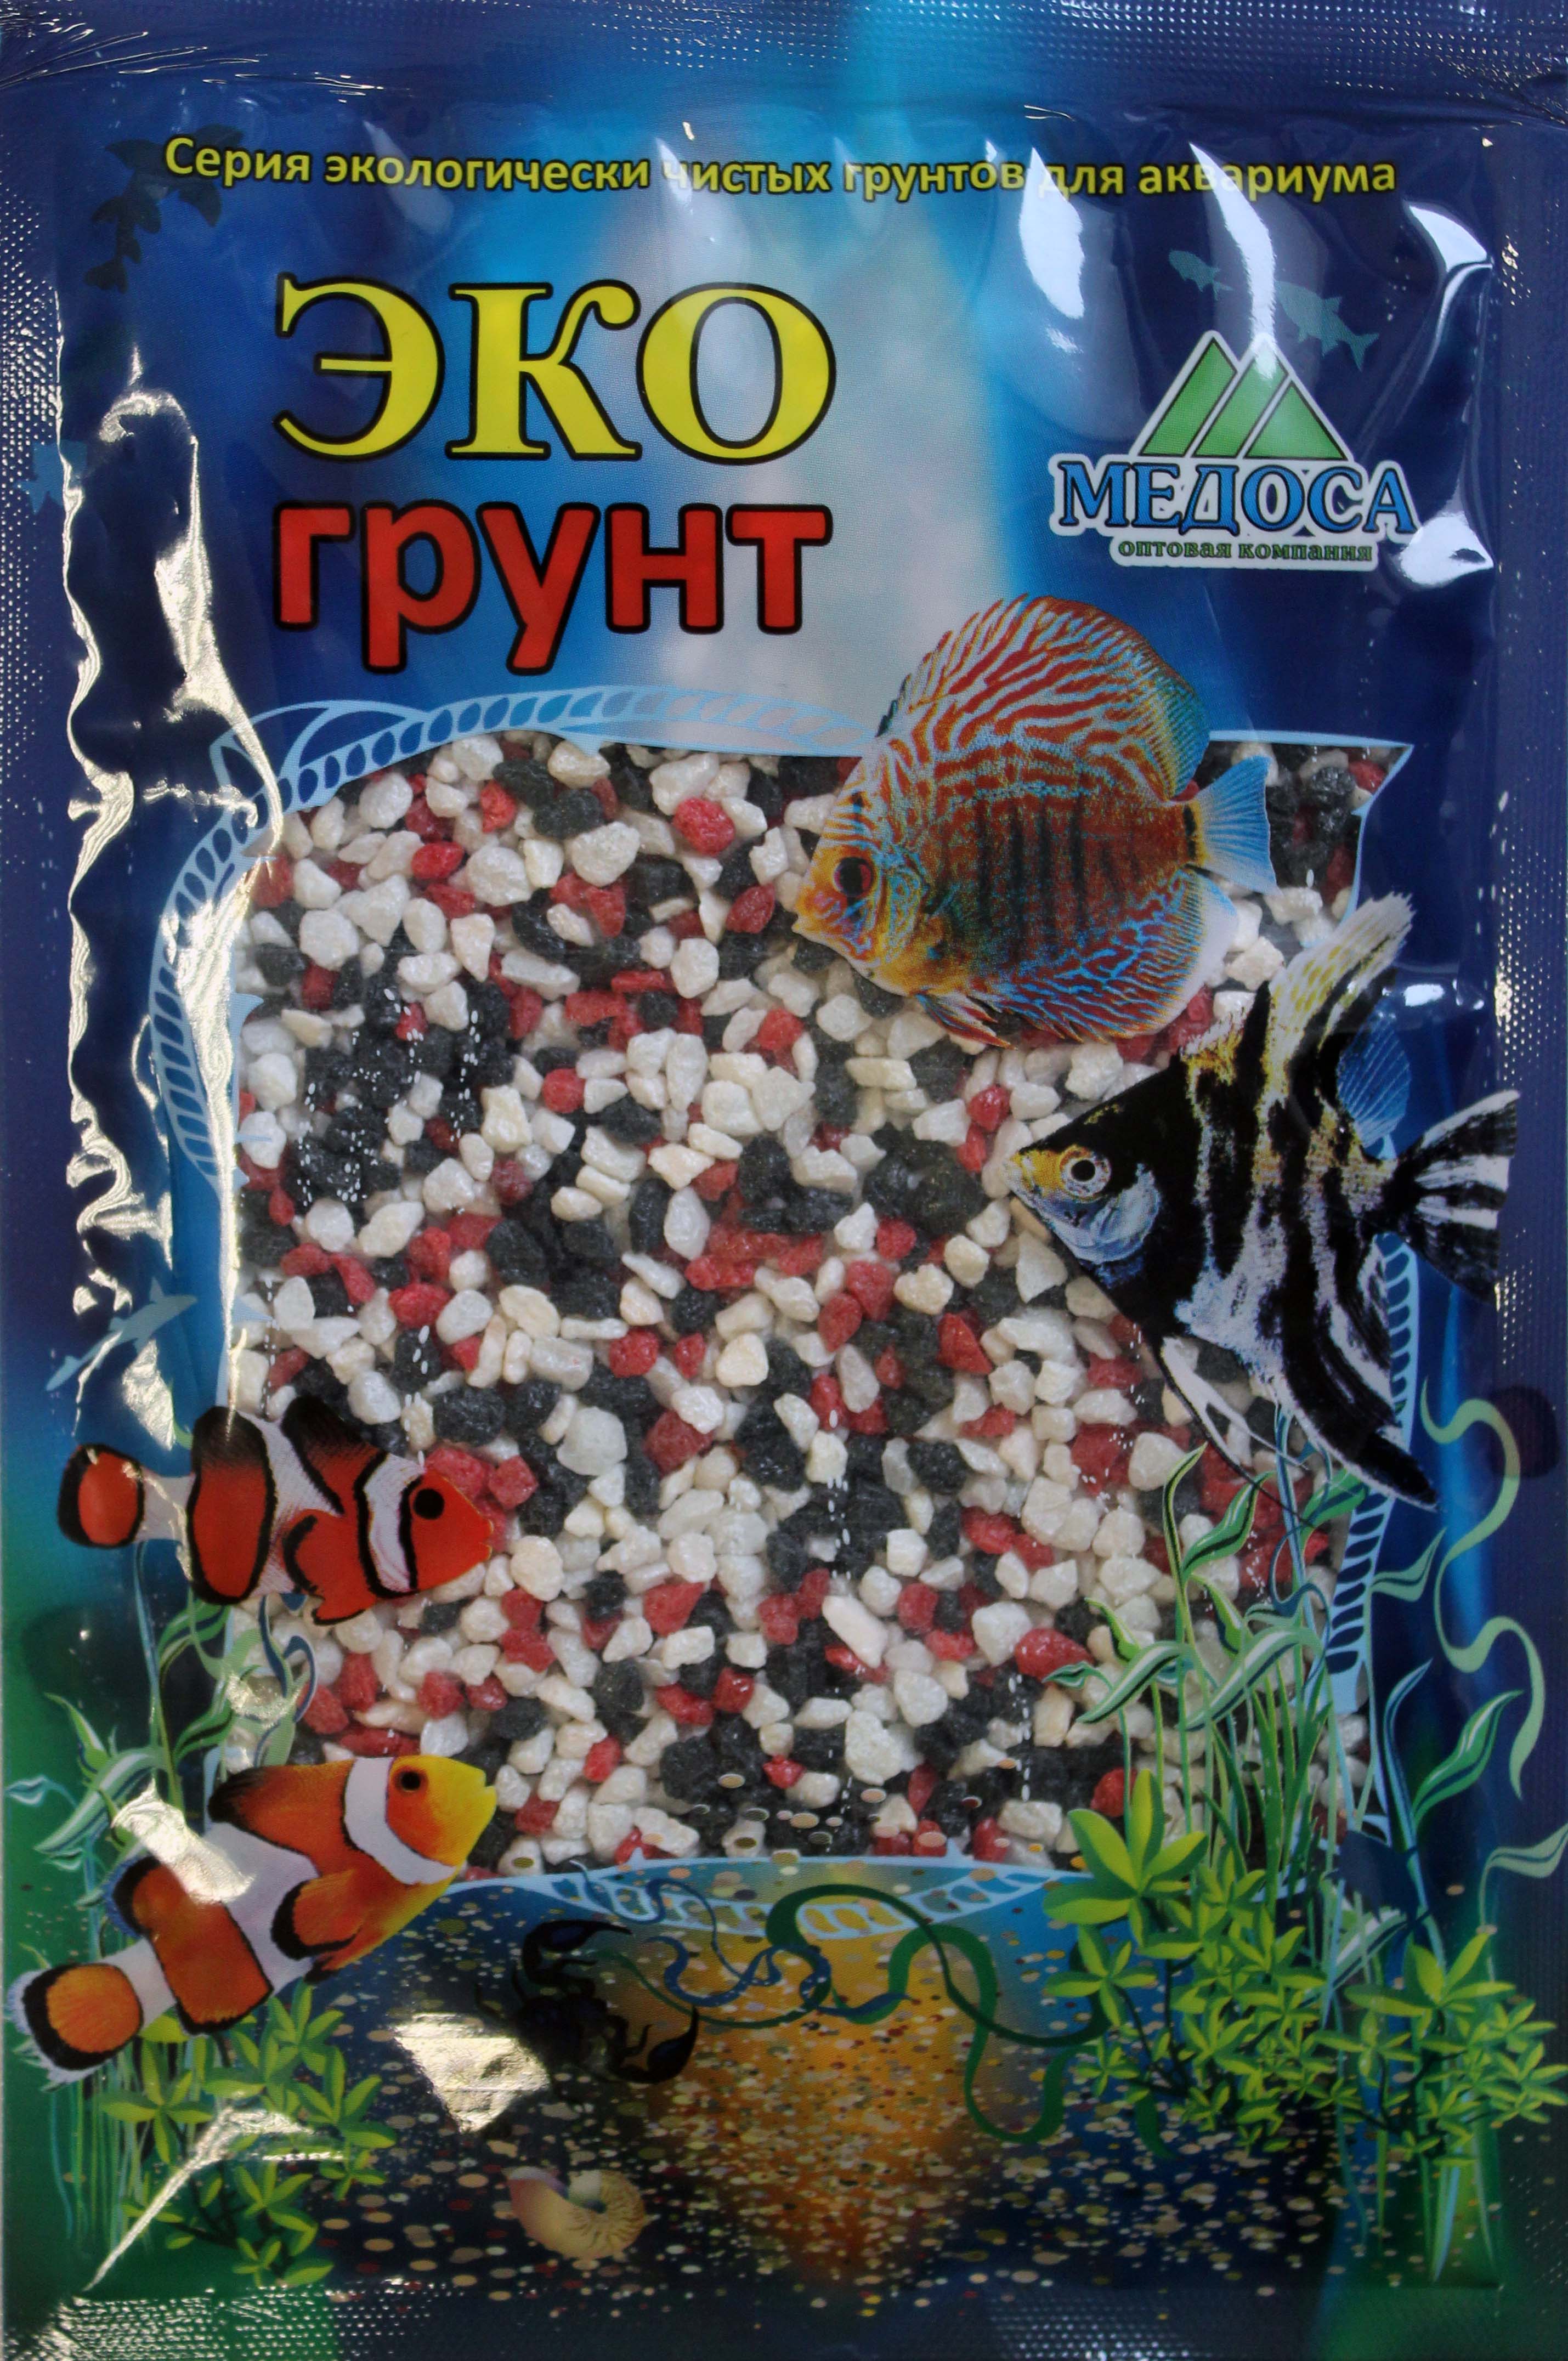 Грунт Медоса 7кг 2-5мм Мраморная Крошка красно-чёрно-белый фото, цены, купить